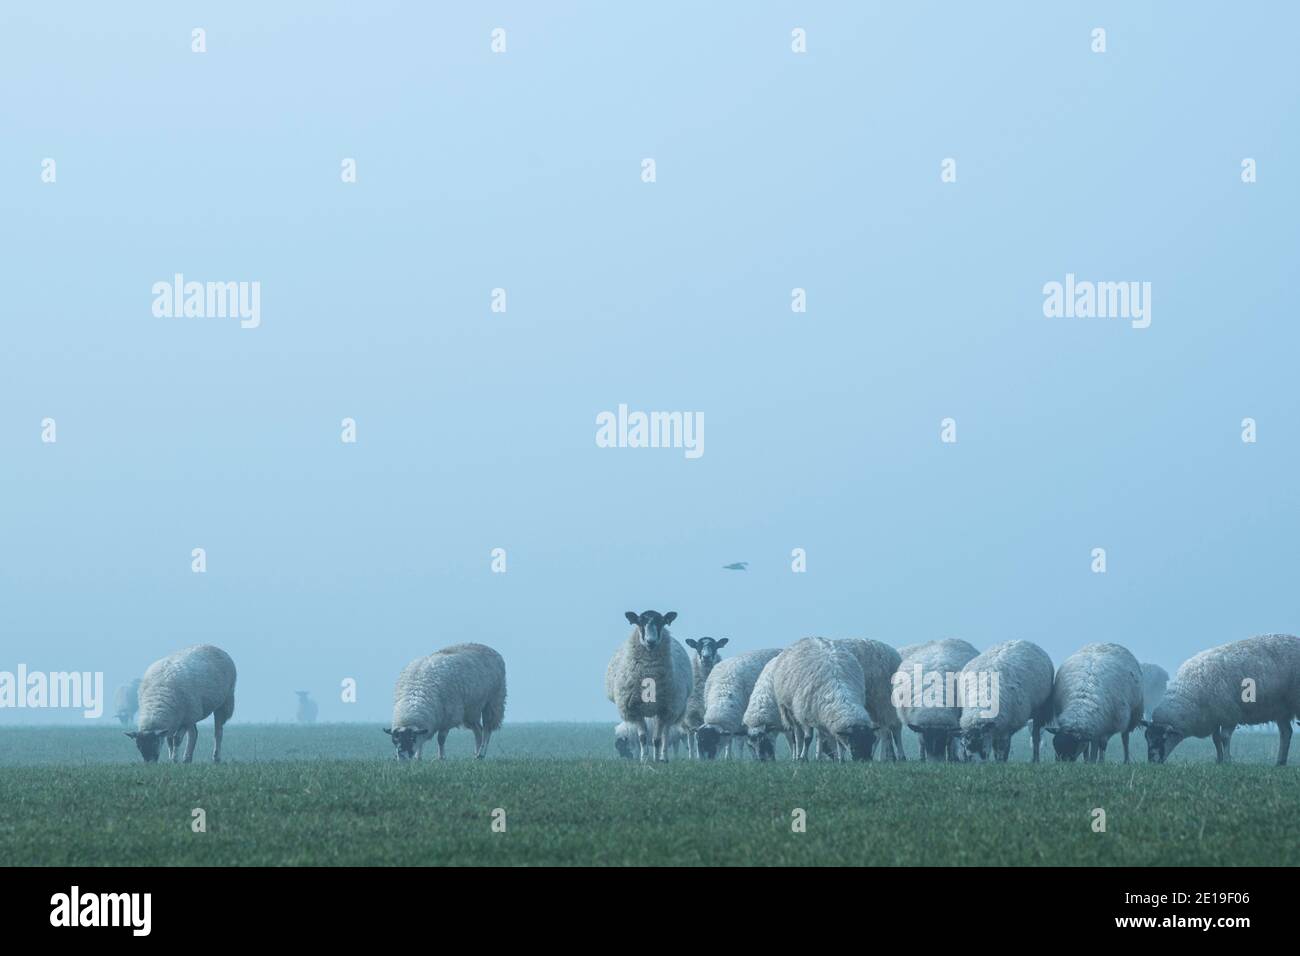 Troupeau de moutons dans un champ vert, animaux de ferme dans la campagne rurale scène sur une ferme dans les terres agricoles dans la brume épaisse et le brouillard, paysage agricole typique anglais paysage, Angleterre, Royaume-Uni Banque D'Images